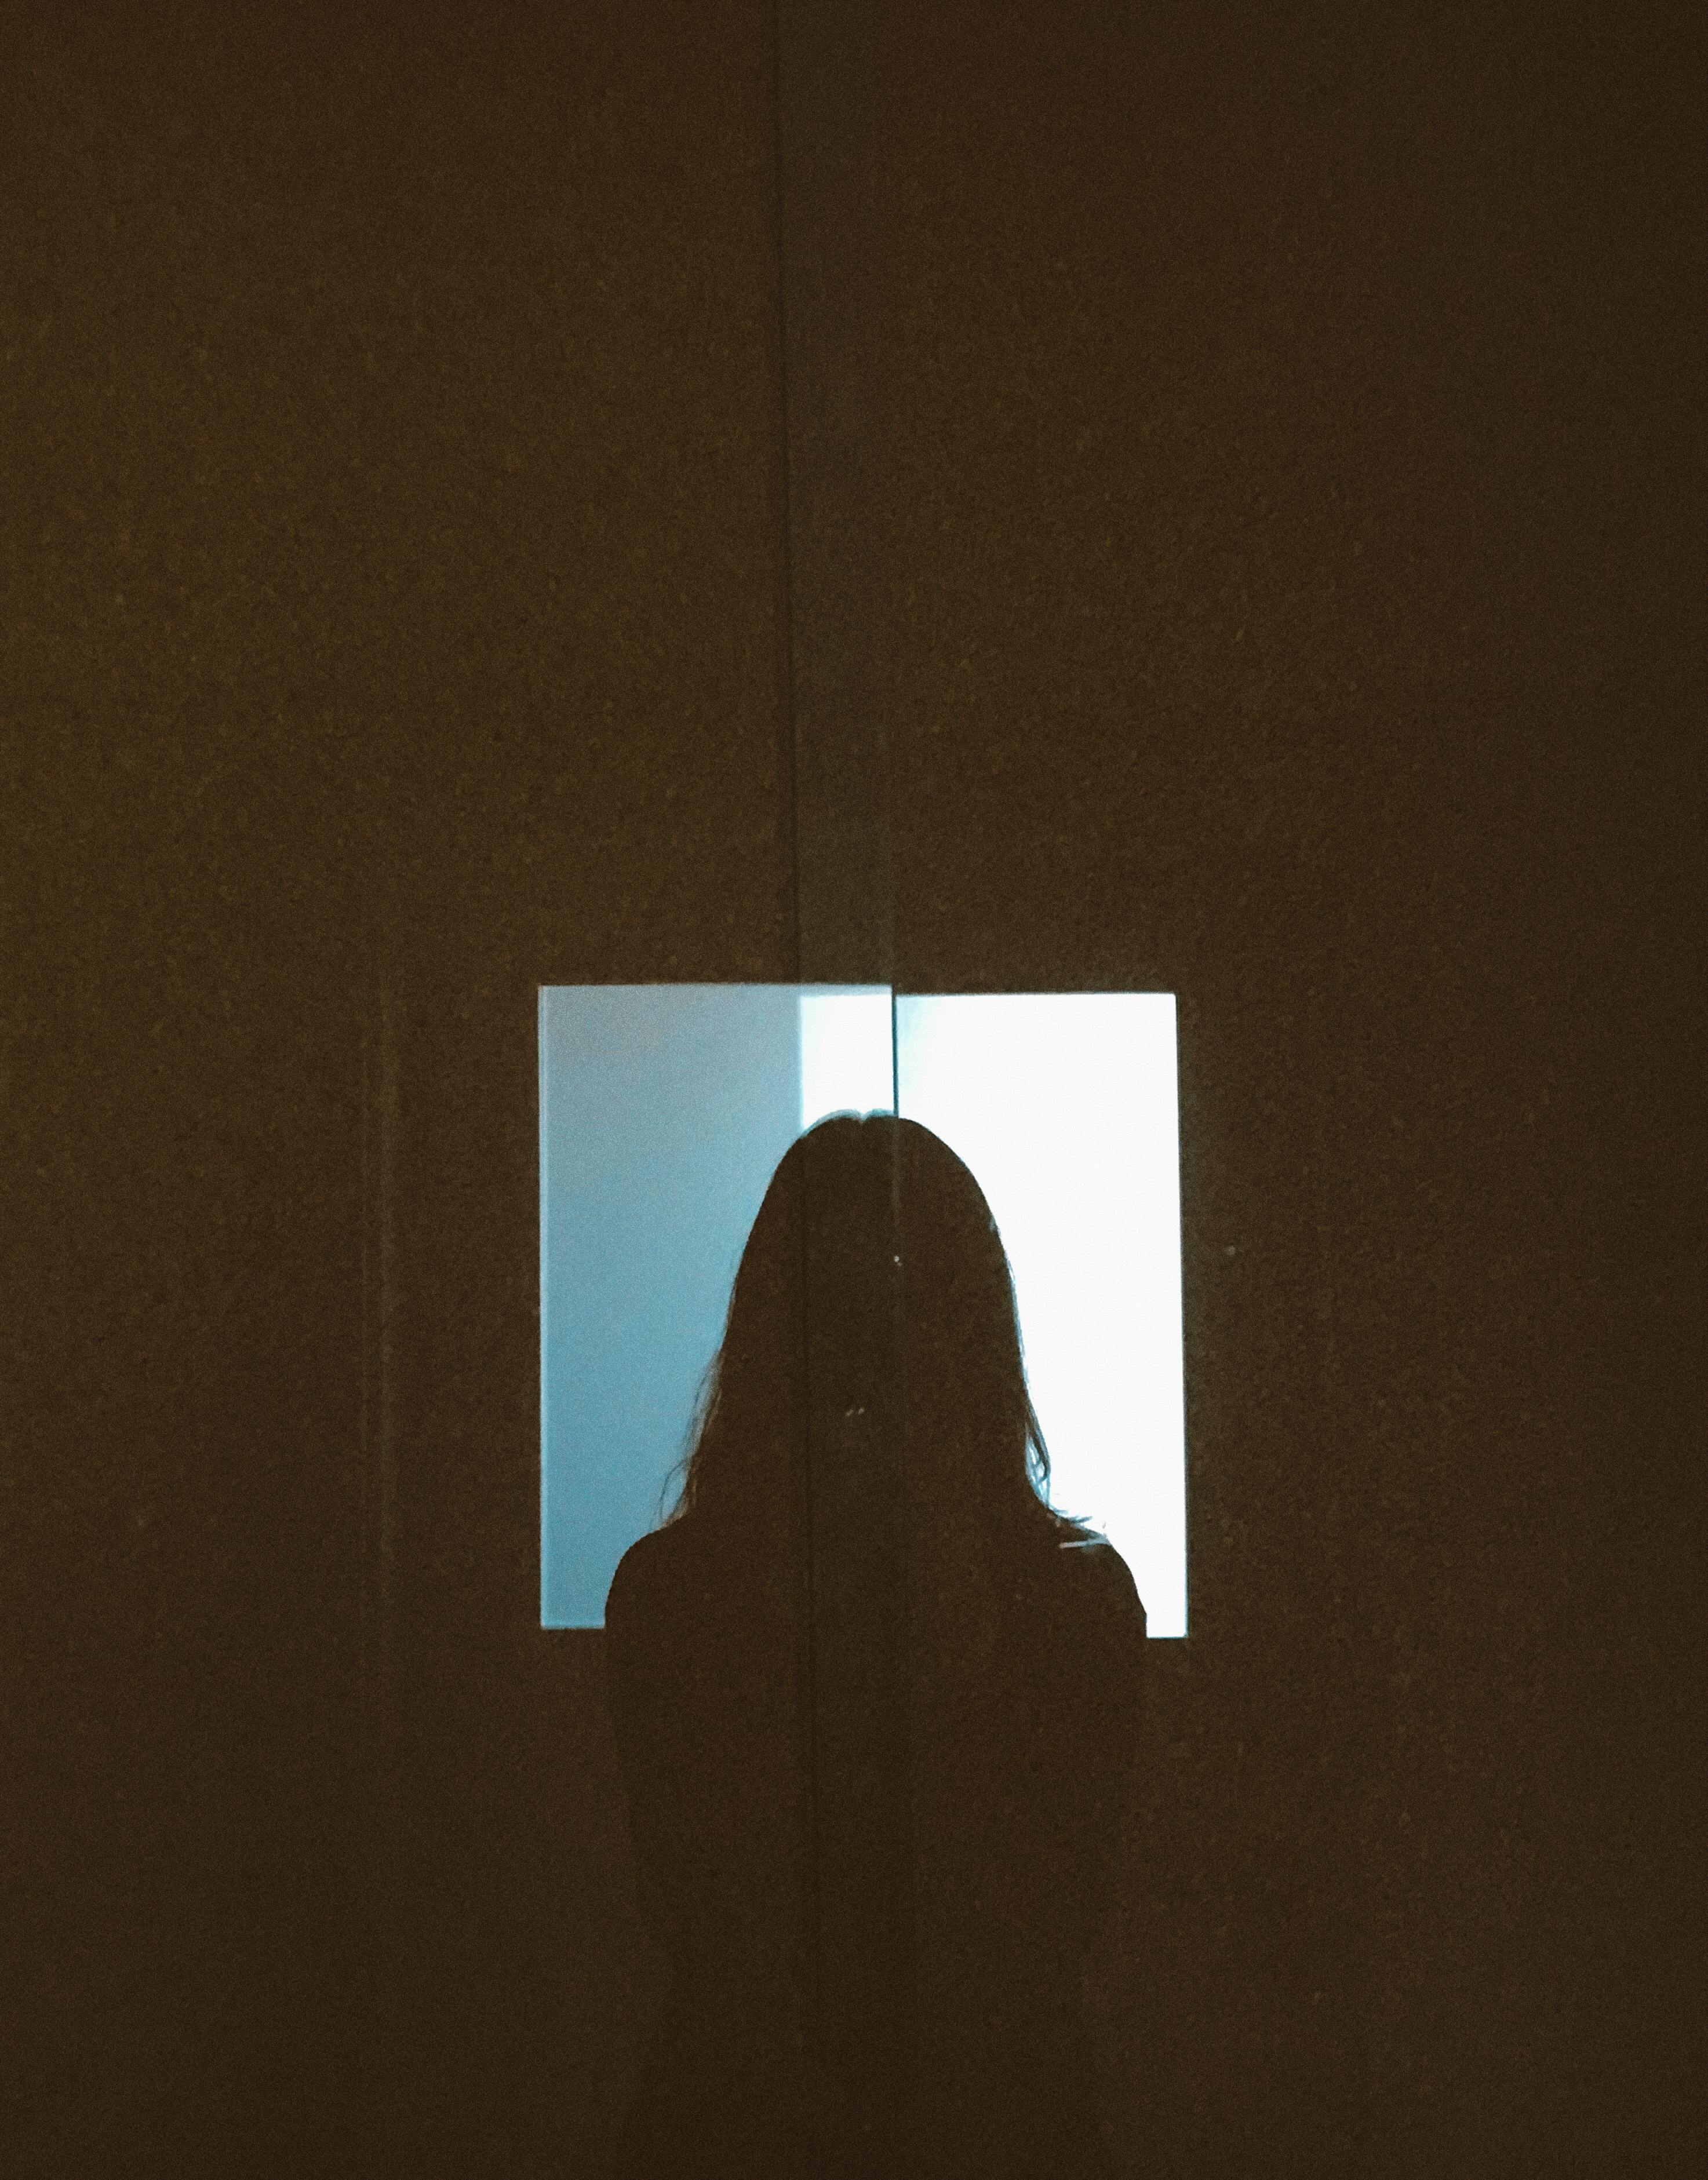 Eine Silhouette einer Person | Quelle: Pexels